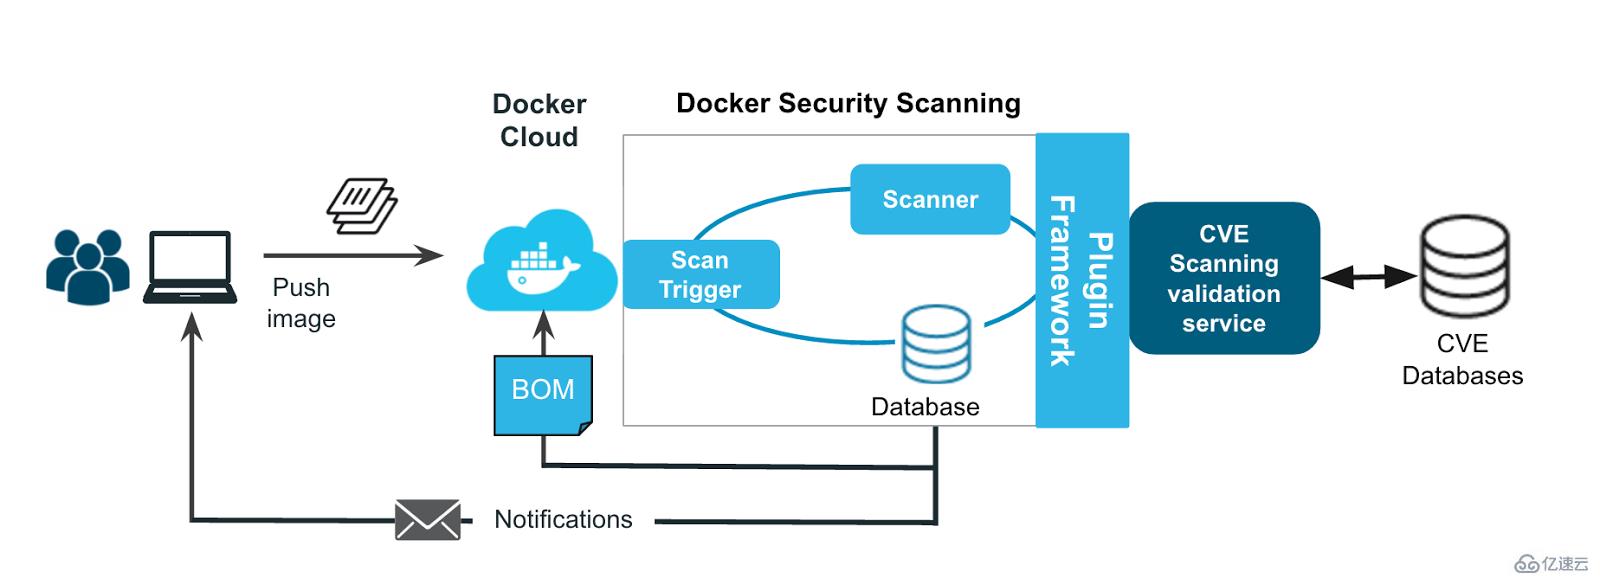 如何分析docker安全贵工具Security Scanning